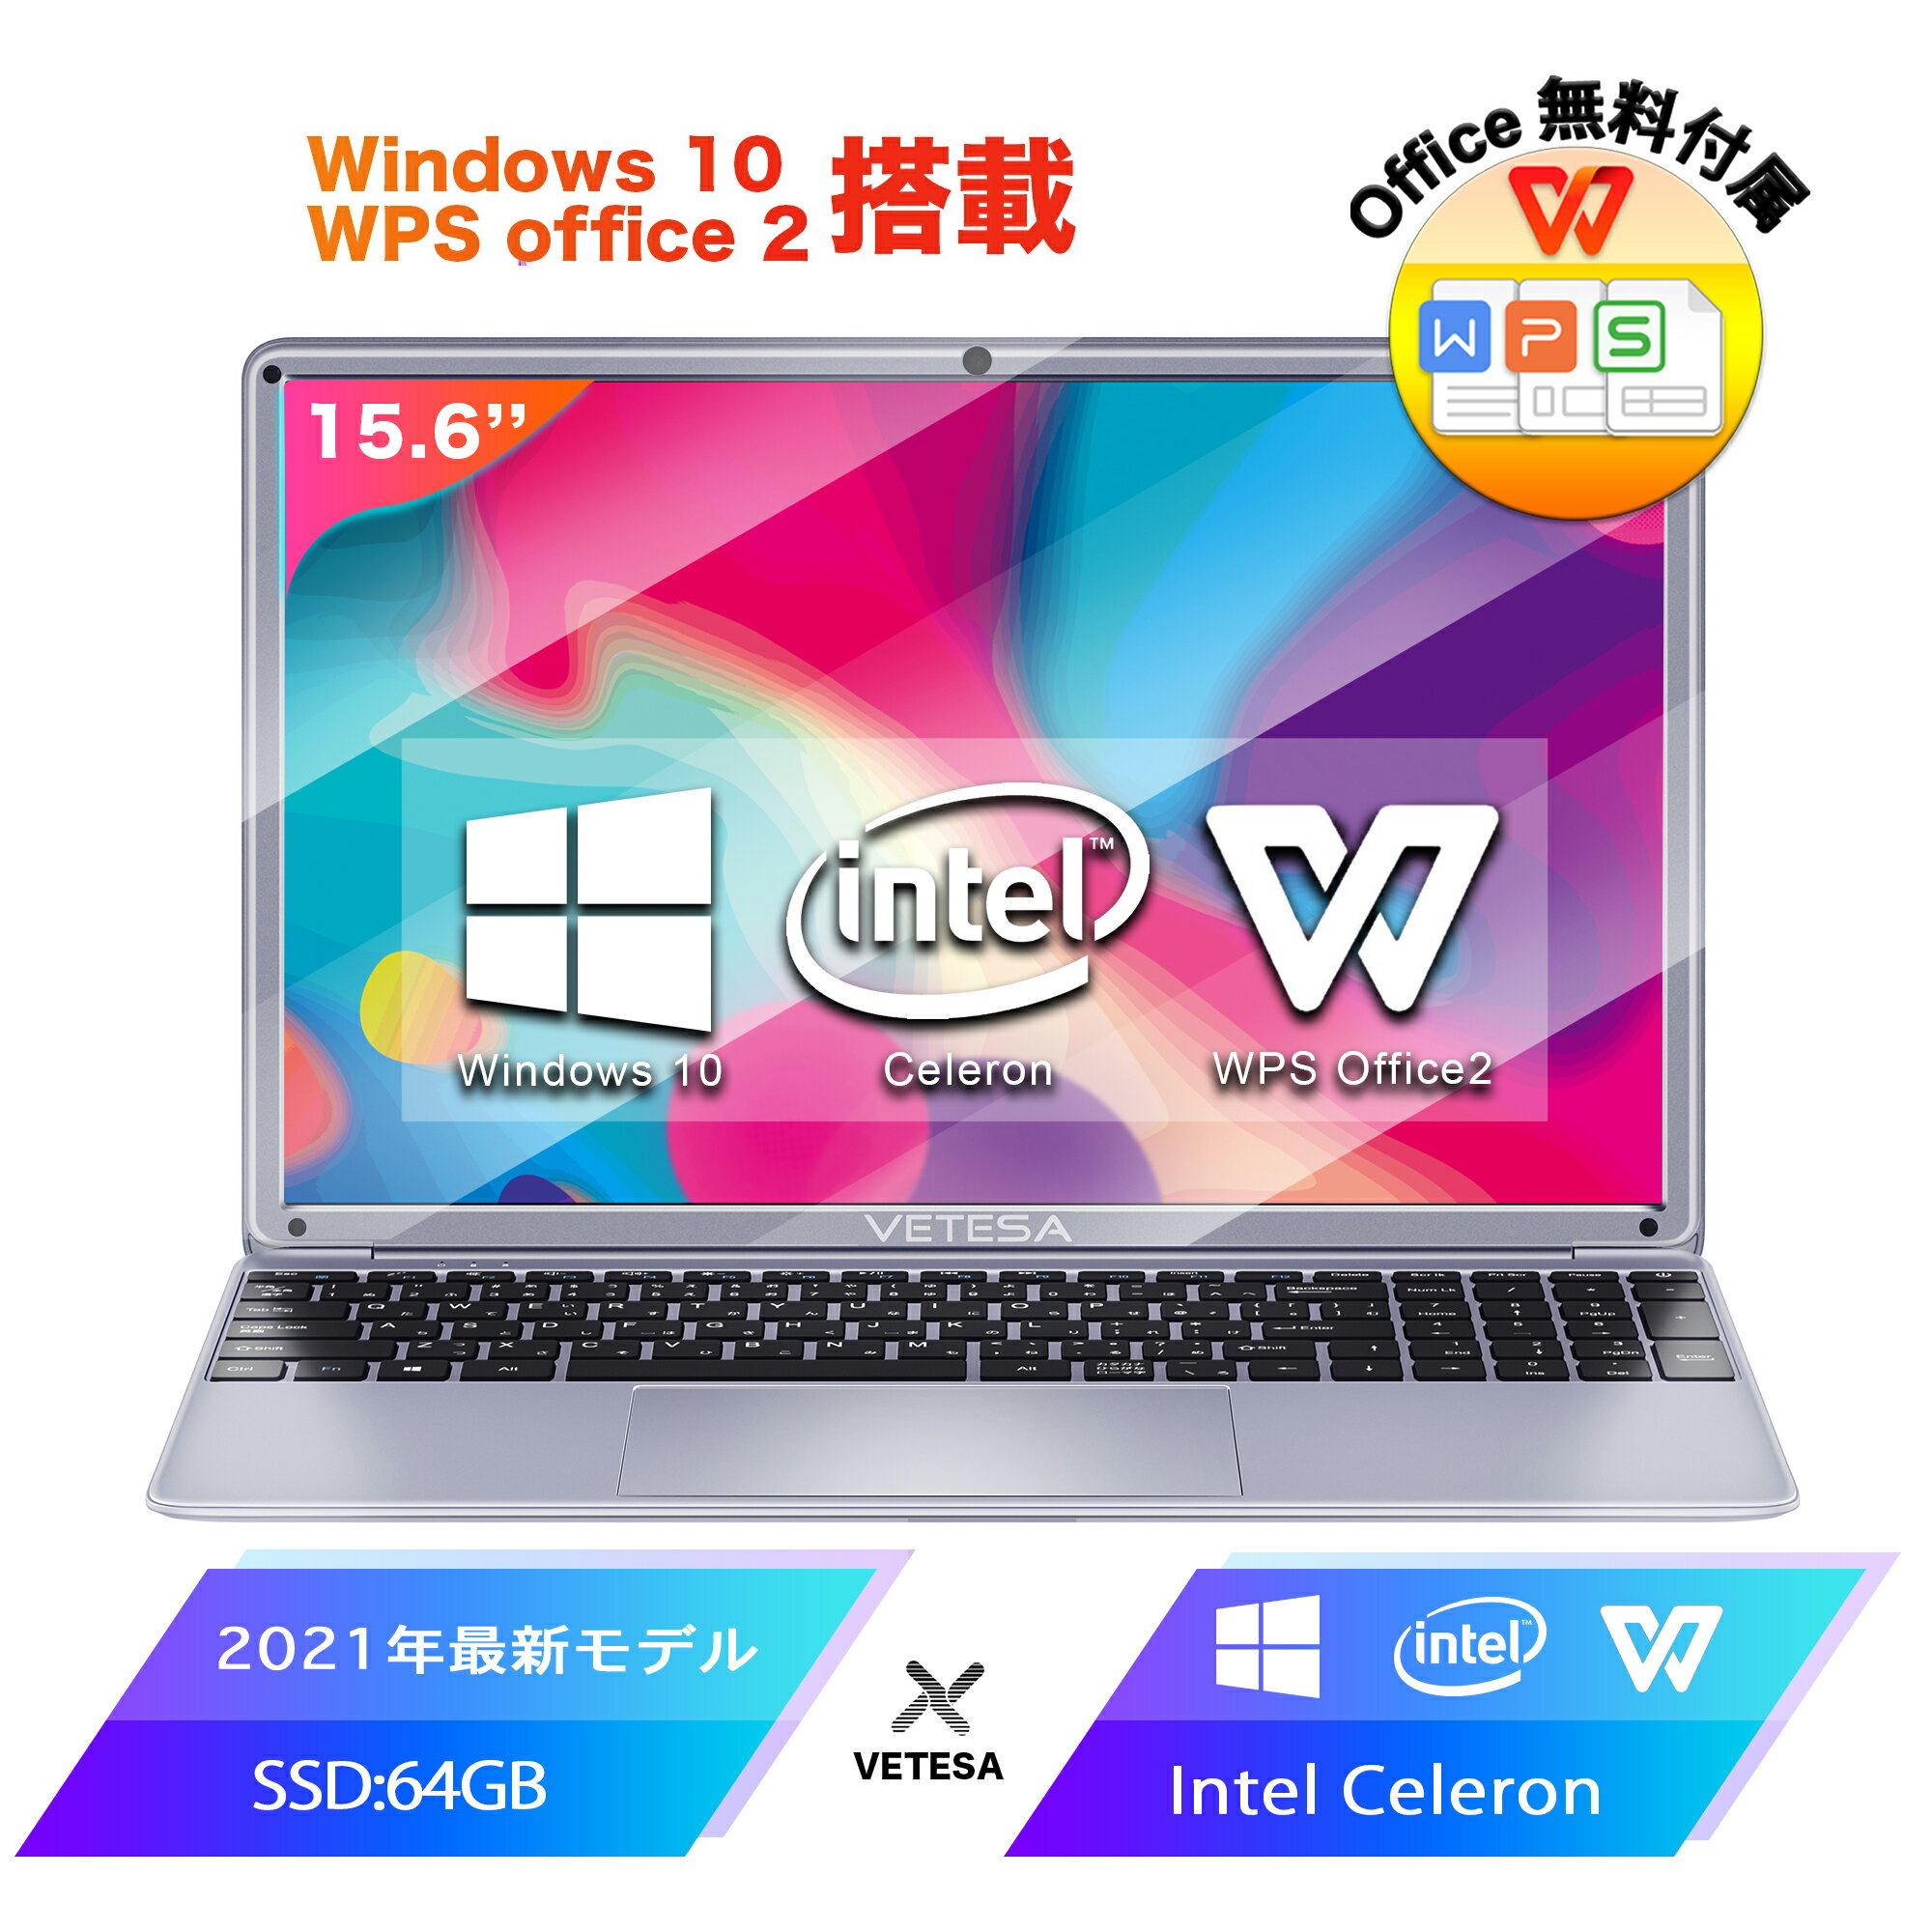 ノートパソコン新品 Office付き 初心者向け Win10搭載 日本語キーボード テレワーク応援 Celeron N4020 メモリー:4GB/高速SSD:64GB/IPS広視野角15.6型液晶/Webカメラ/10キー/USB 3.0/miniHDMI/無線機能/Bluetooth/超軽量大容量バッテリー/ノートPC在宅勤務(N15DP1)